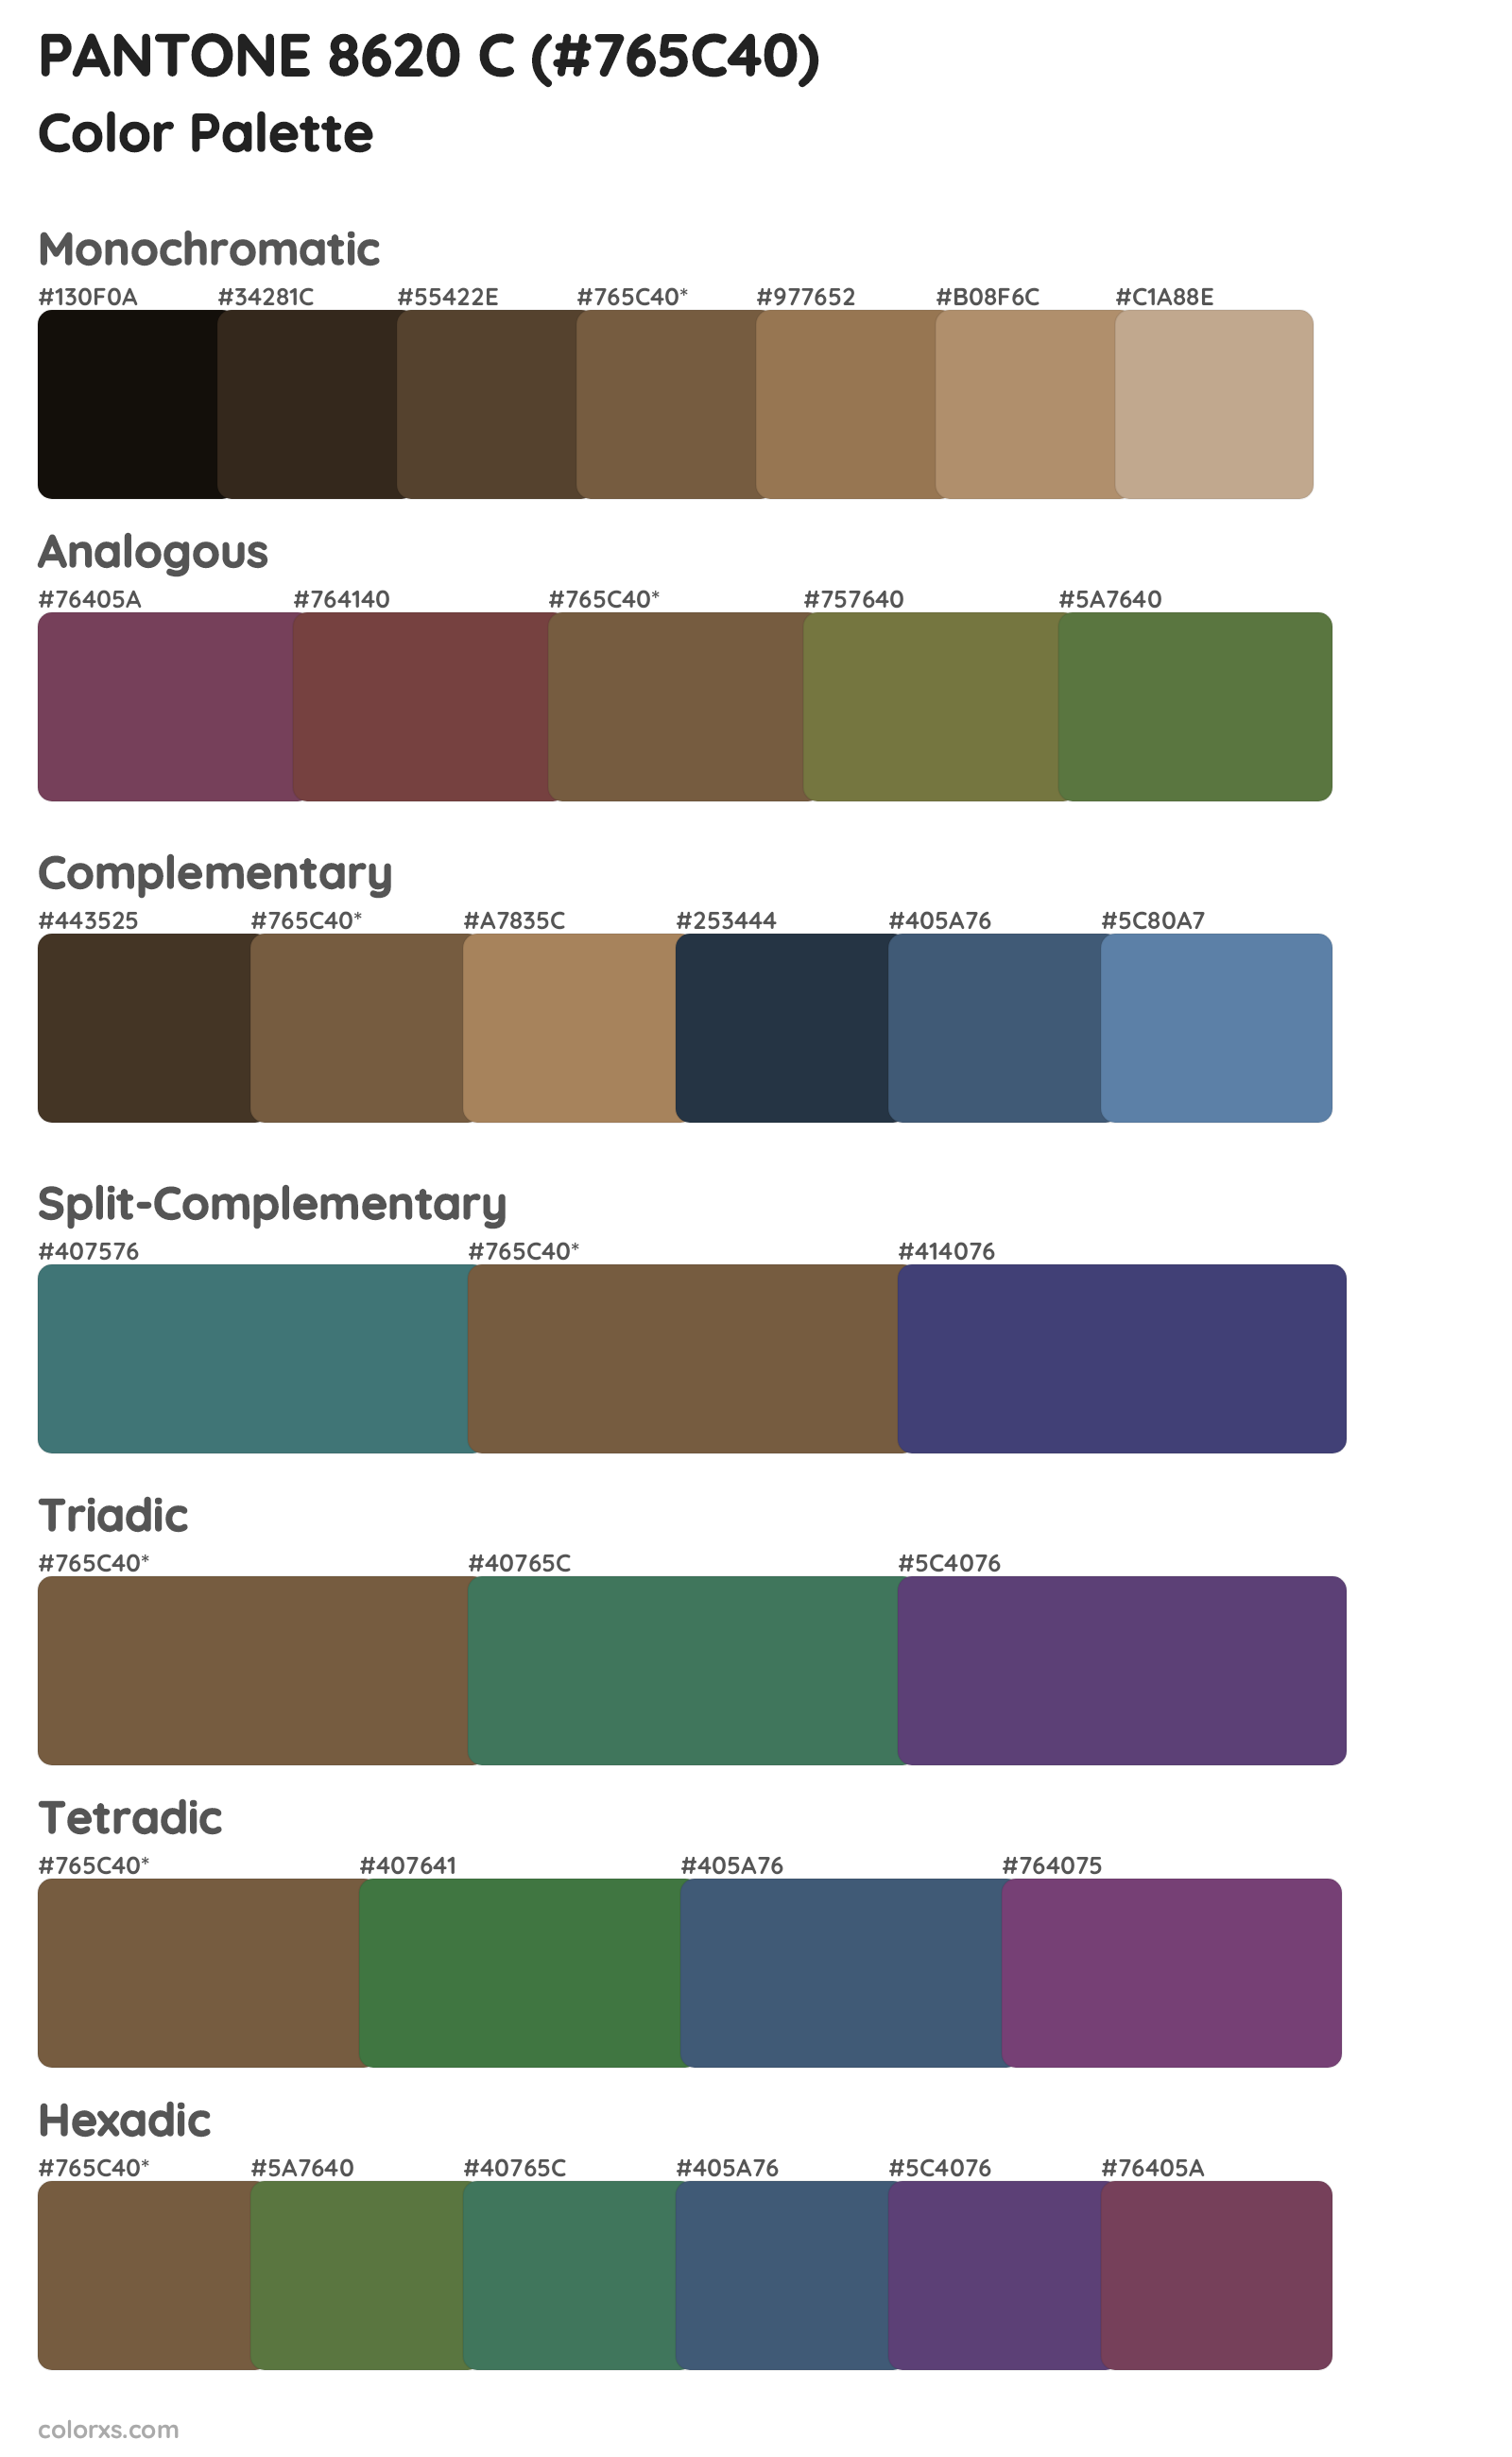 PANTONE 8620 C Color Scheme Palettes